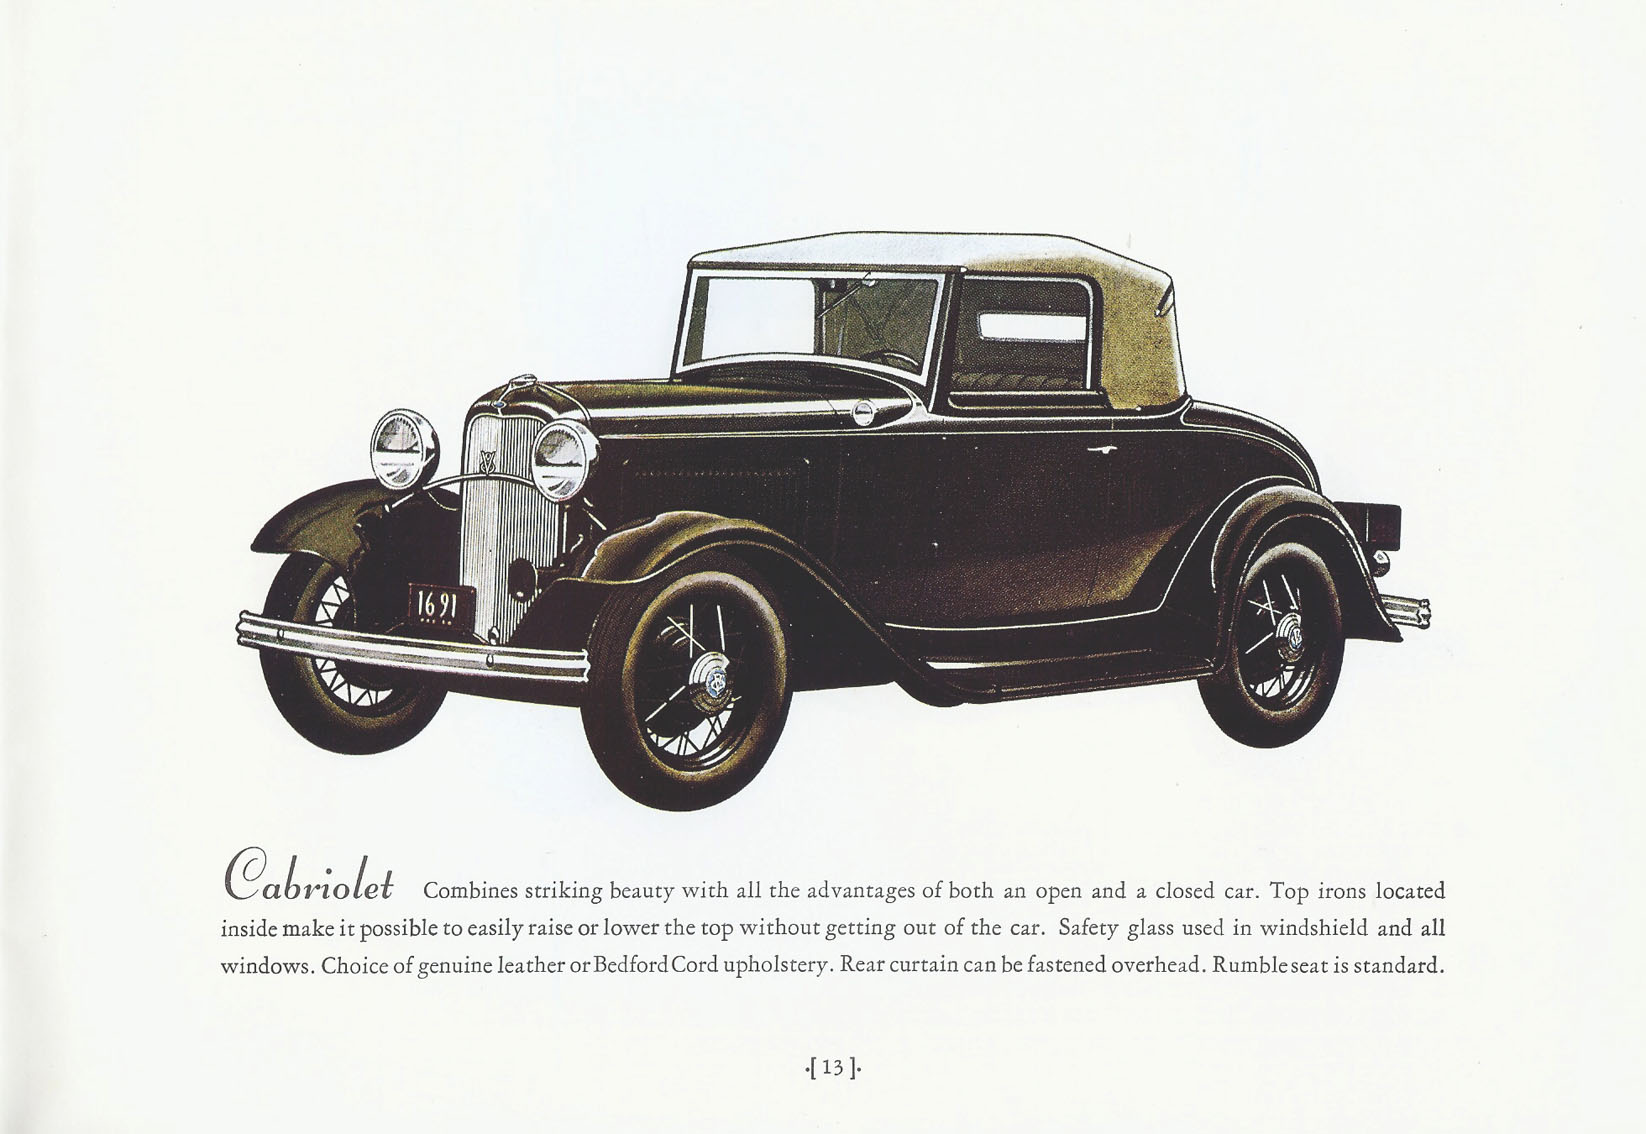 1932_Ford_Full_Line-13